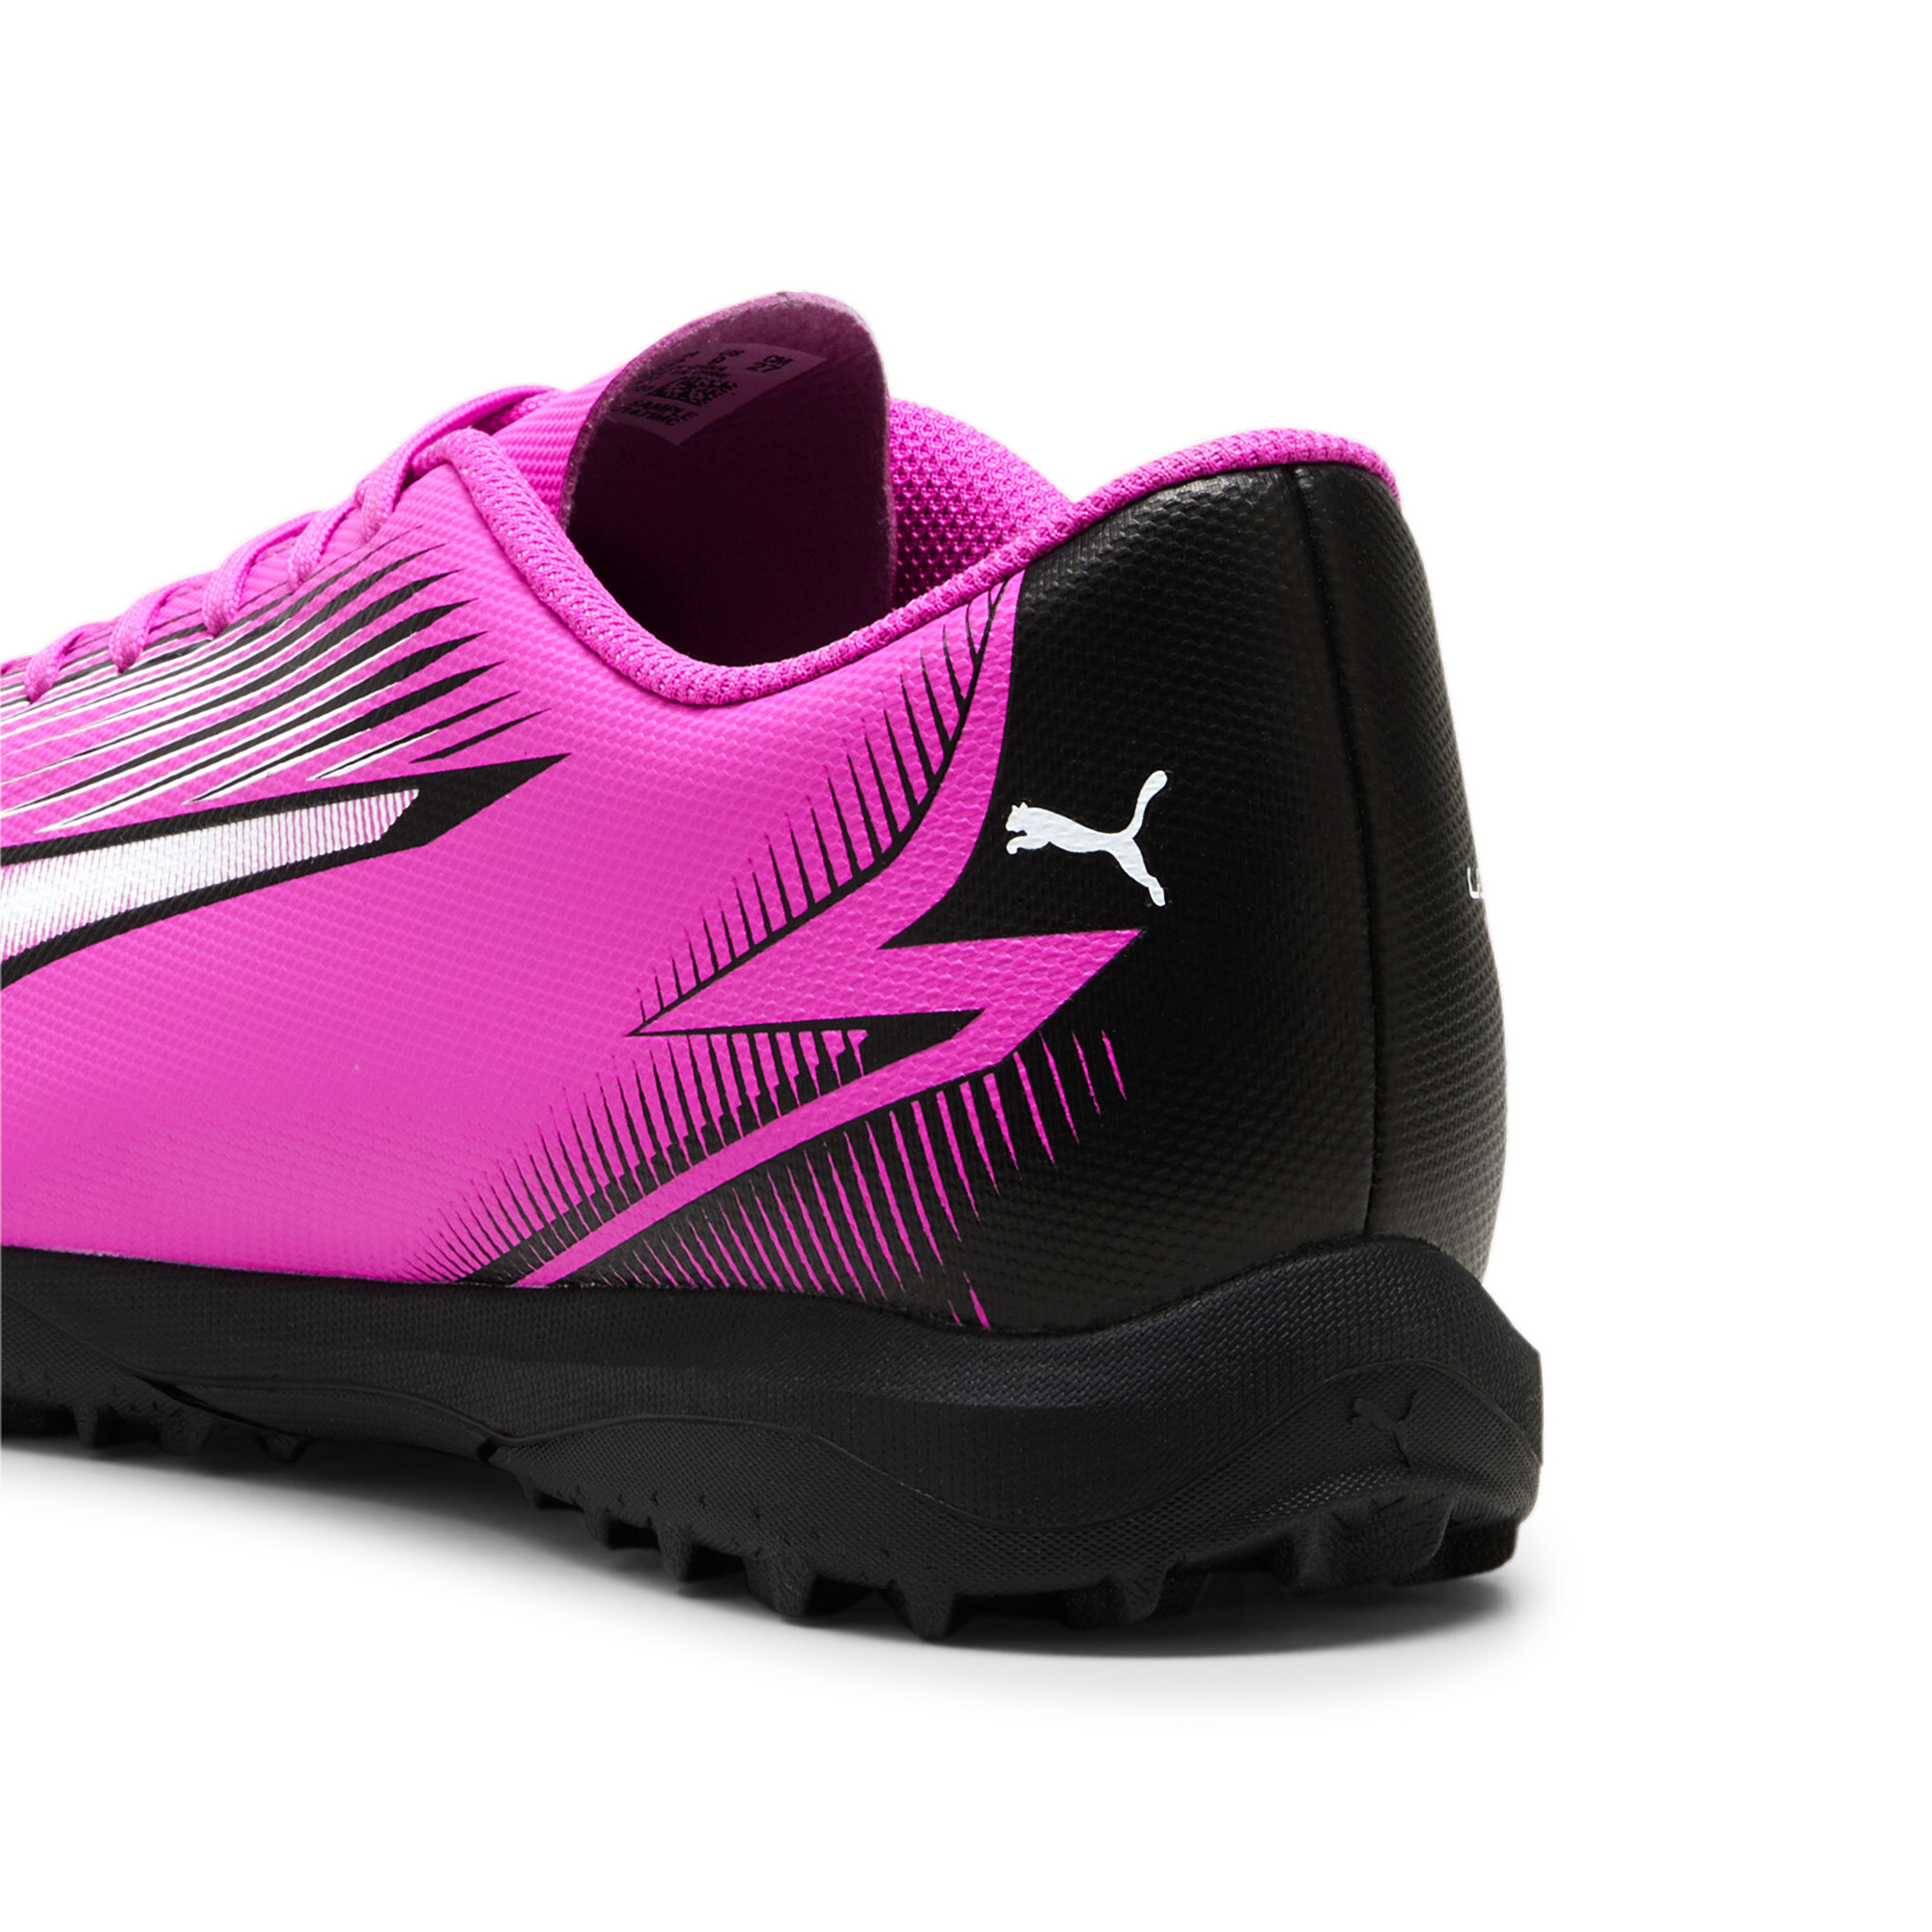 Men's PUMA ULTRA PLAY TT Football Boots In Pink, Size EU 42.5